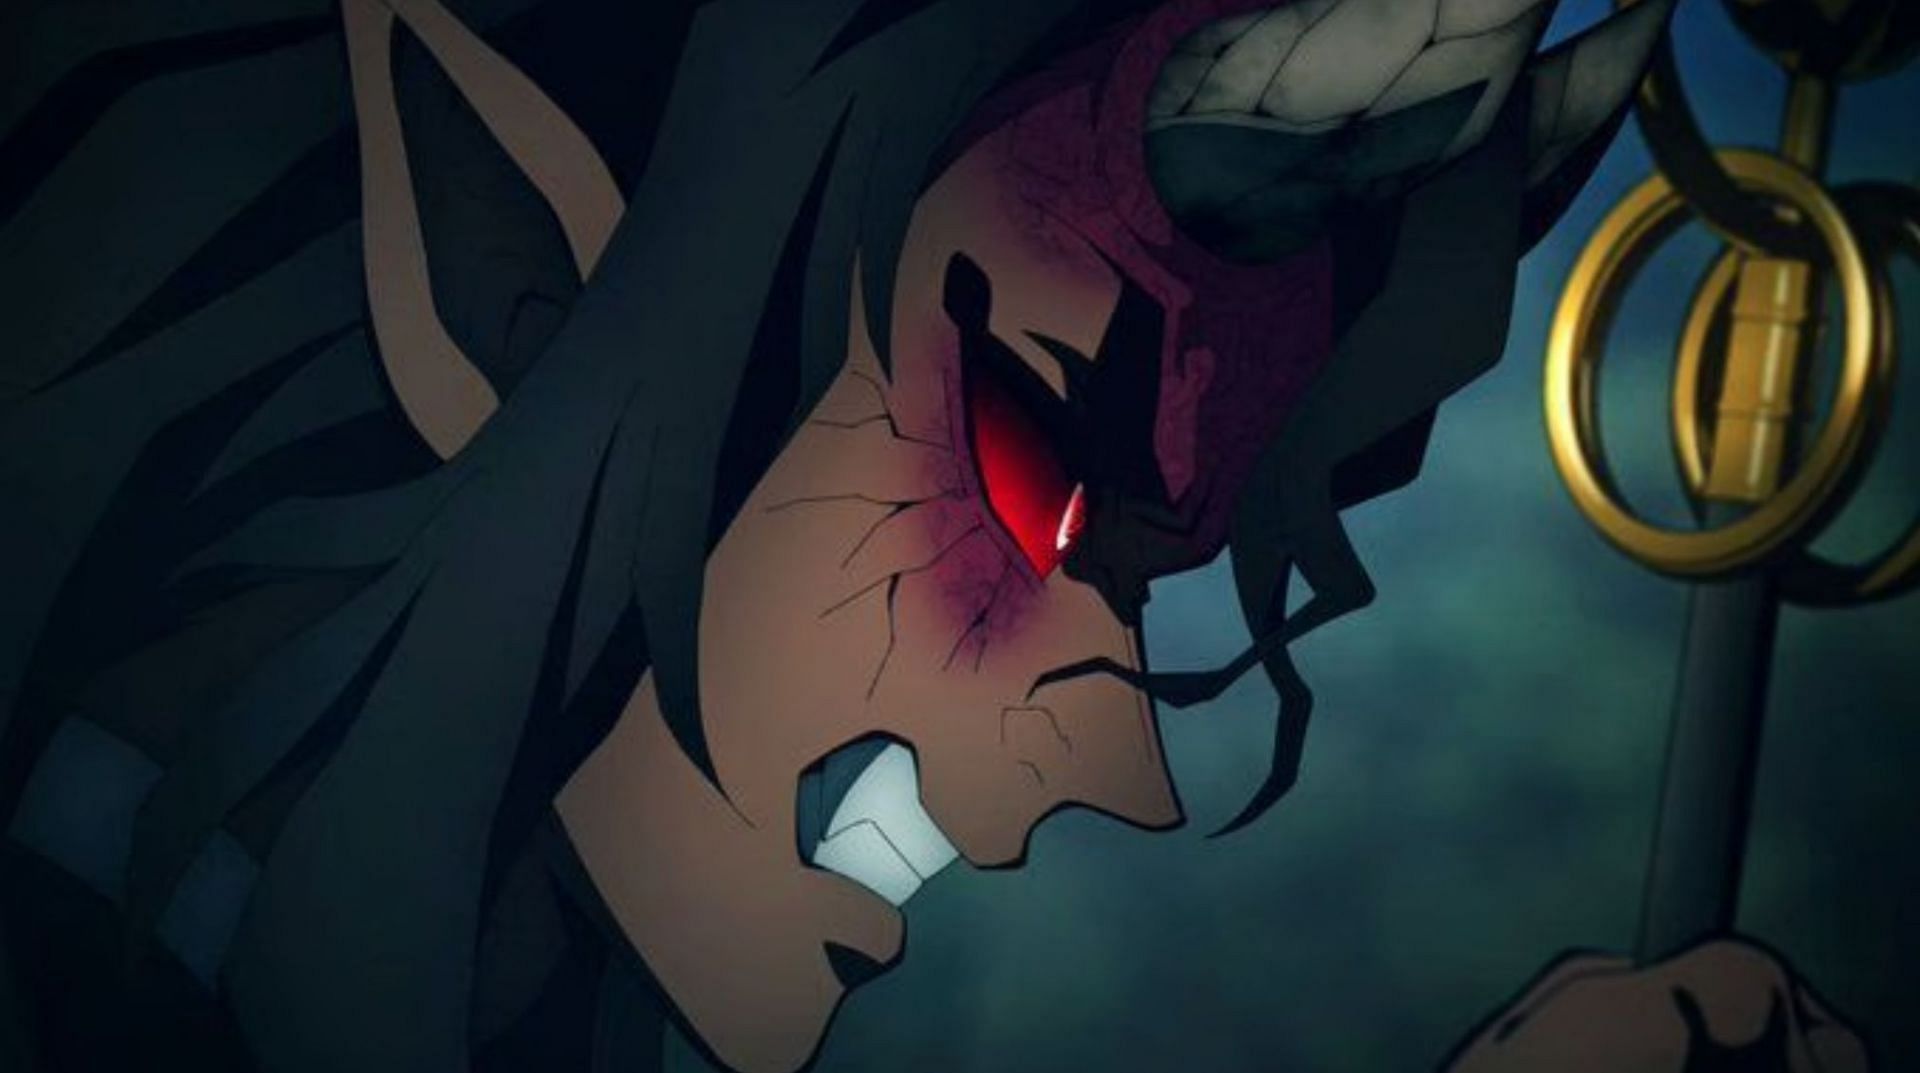 Demon Slayer Anime (image via Ufotable, Inc.)